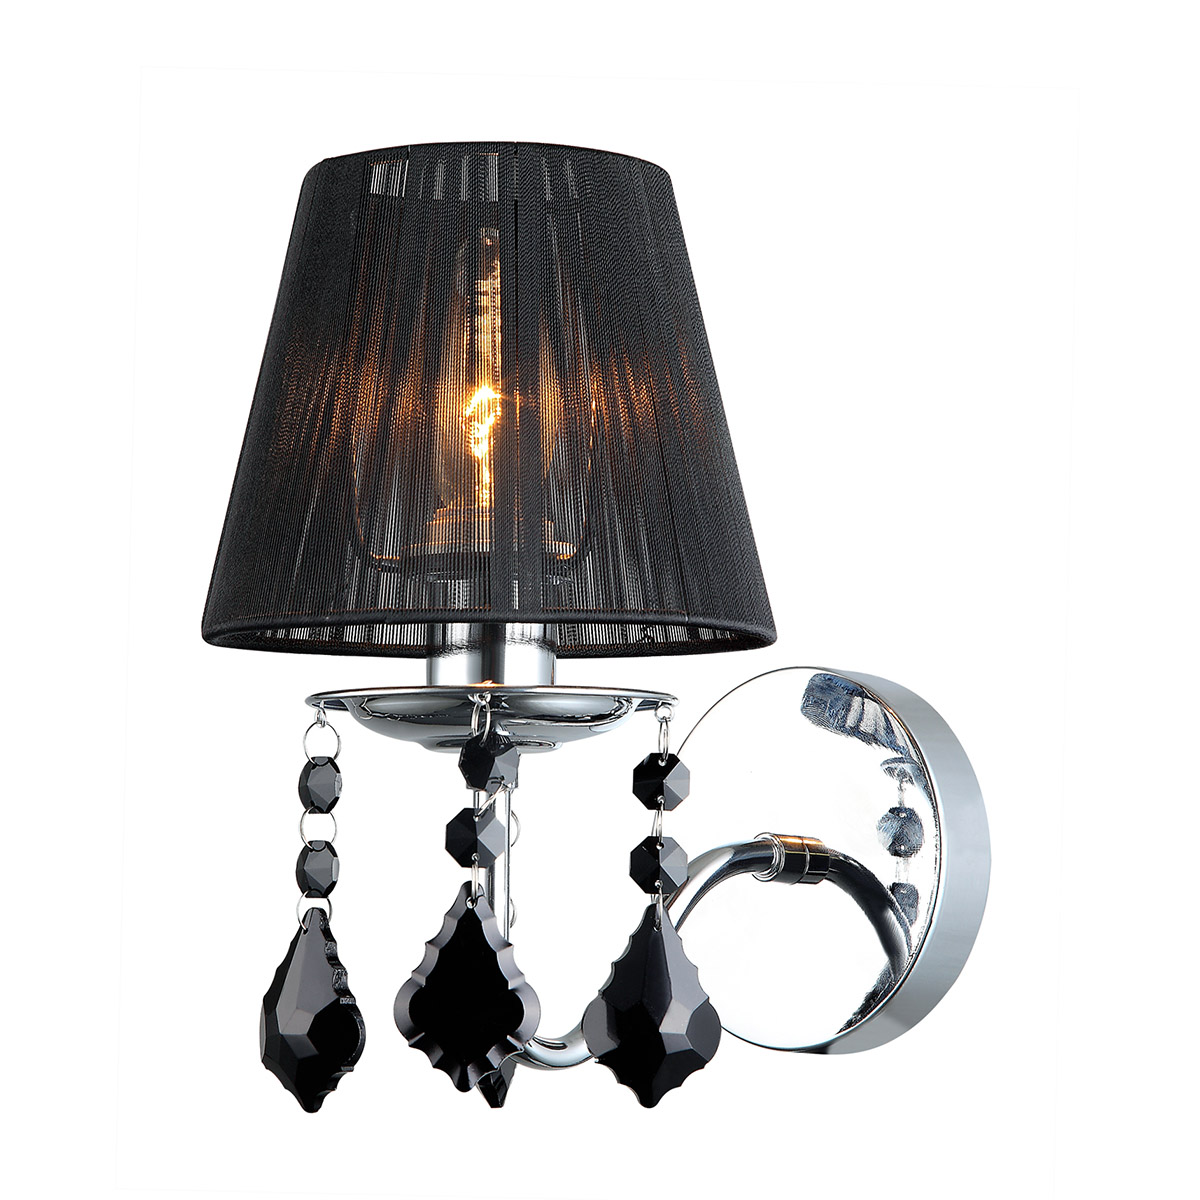 Kinkiet Italux Cornelia MBM-2572/1 BK lampa oprawa ścienna kryształki 1x40W E14 chrom/kryształ/czarny >>> RABATUJEMY DO 20% KAŻDE ZAMÓWIENIE!!! - wysyłka w 24h